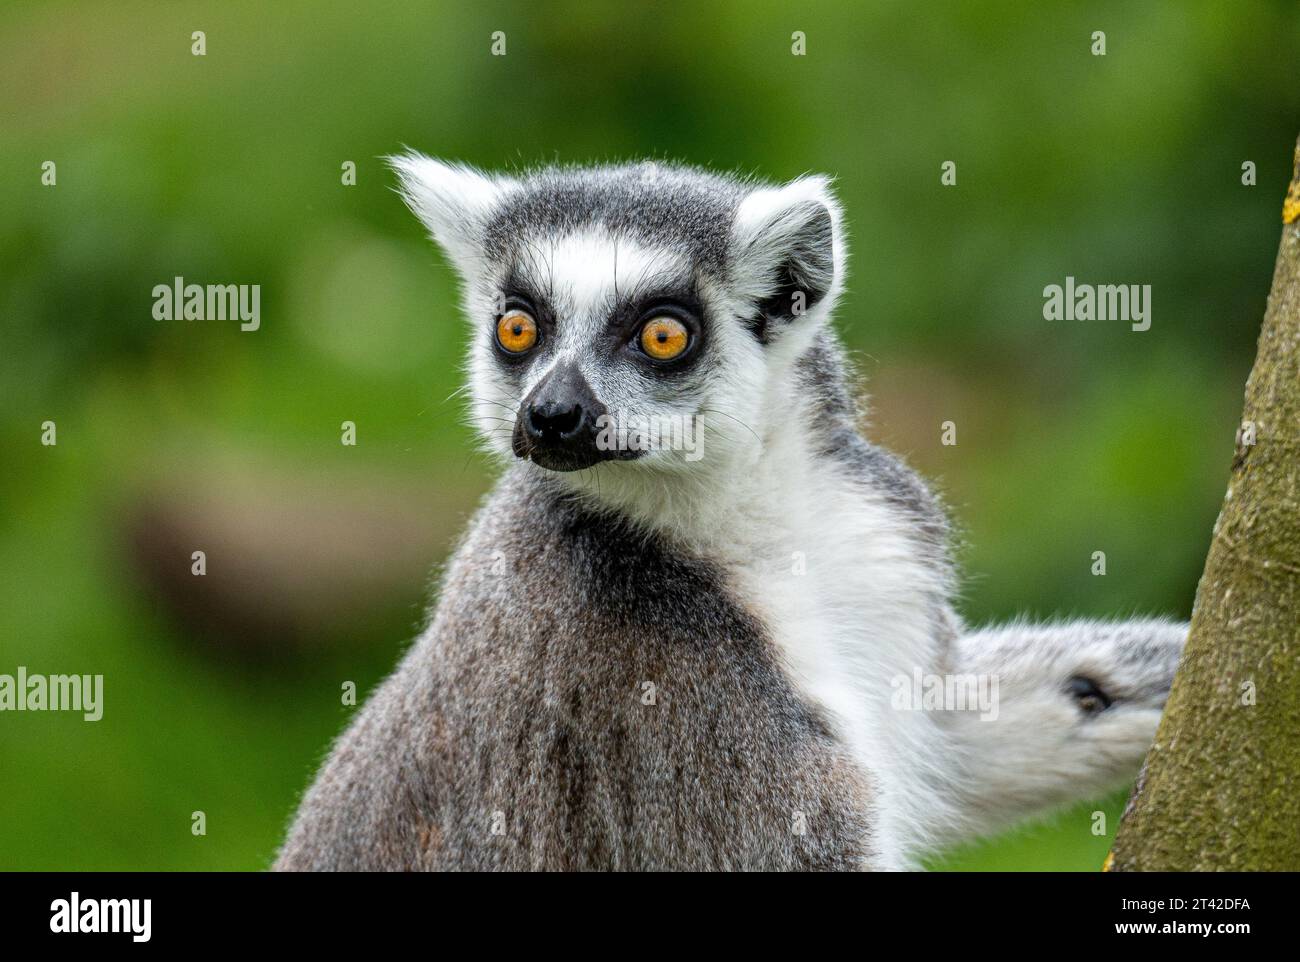 Eine Lemur, die auf einem Baumzweig in einer üppigen Umgebung im Freien thront, der Blick nach außen gerichtet ist Stockfoto